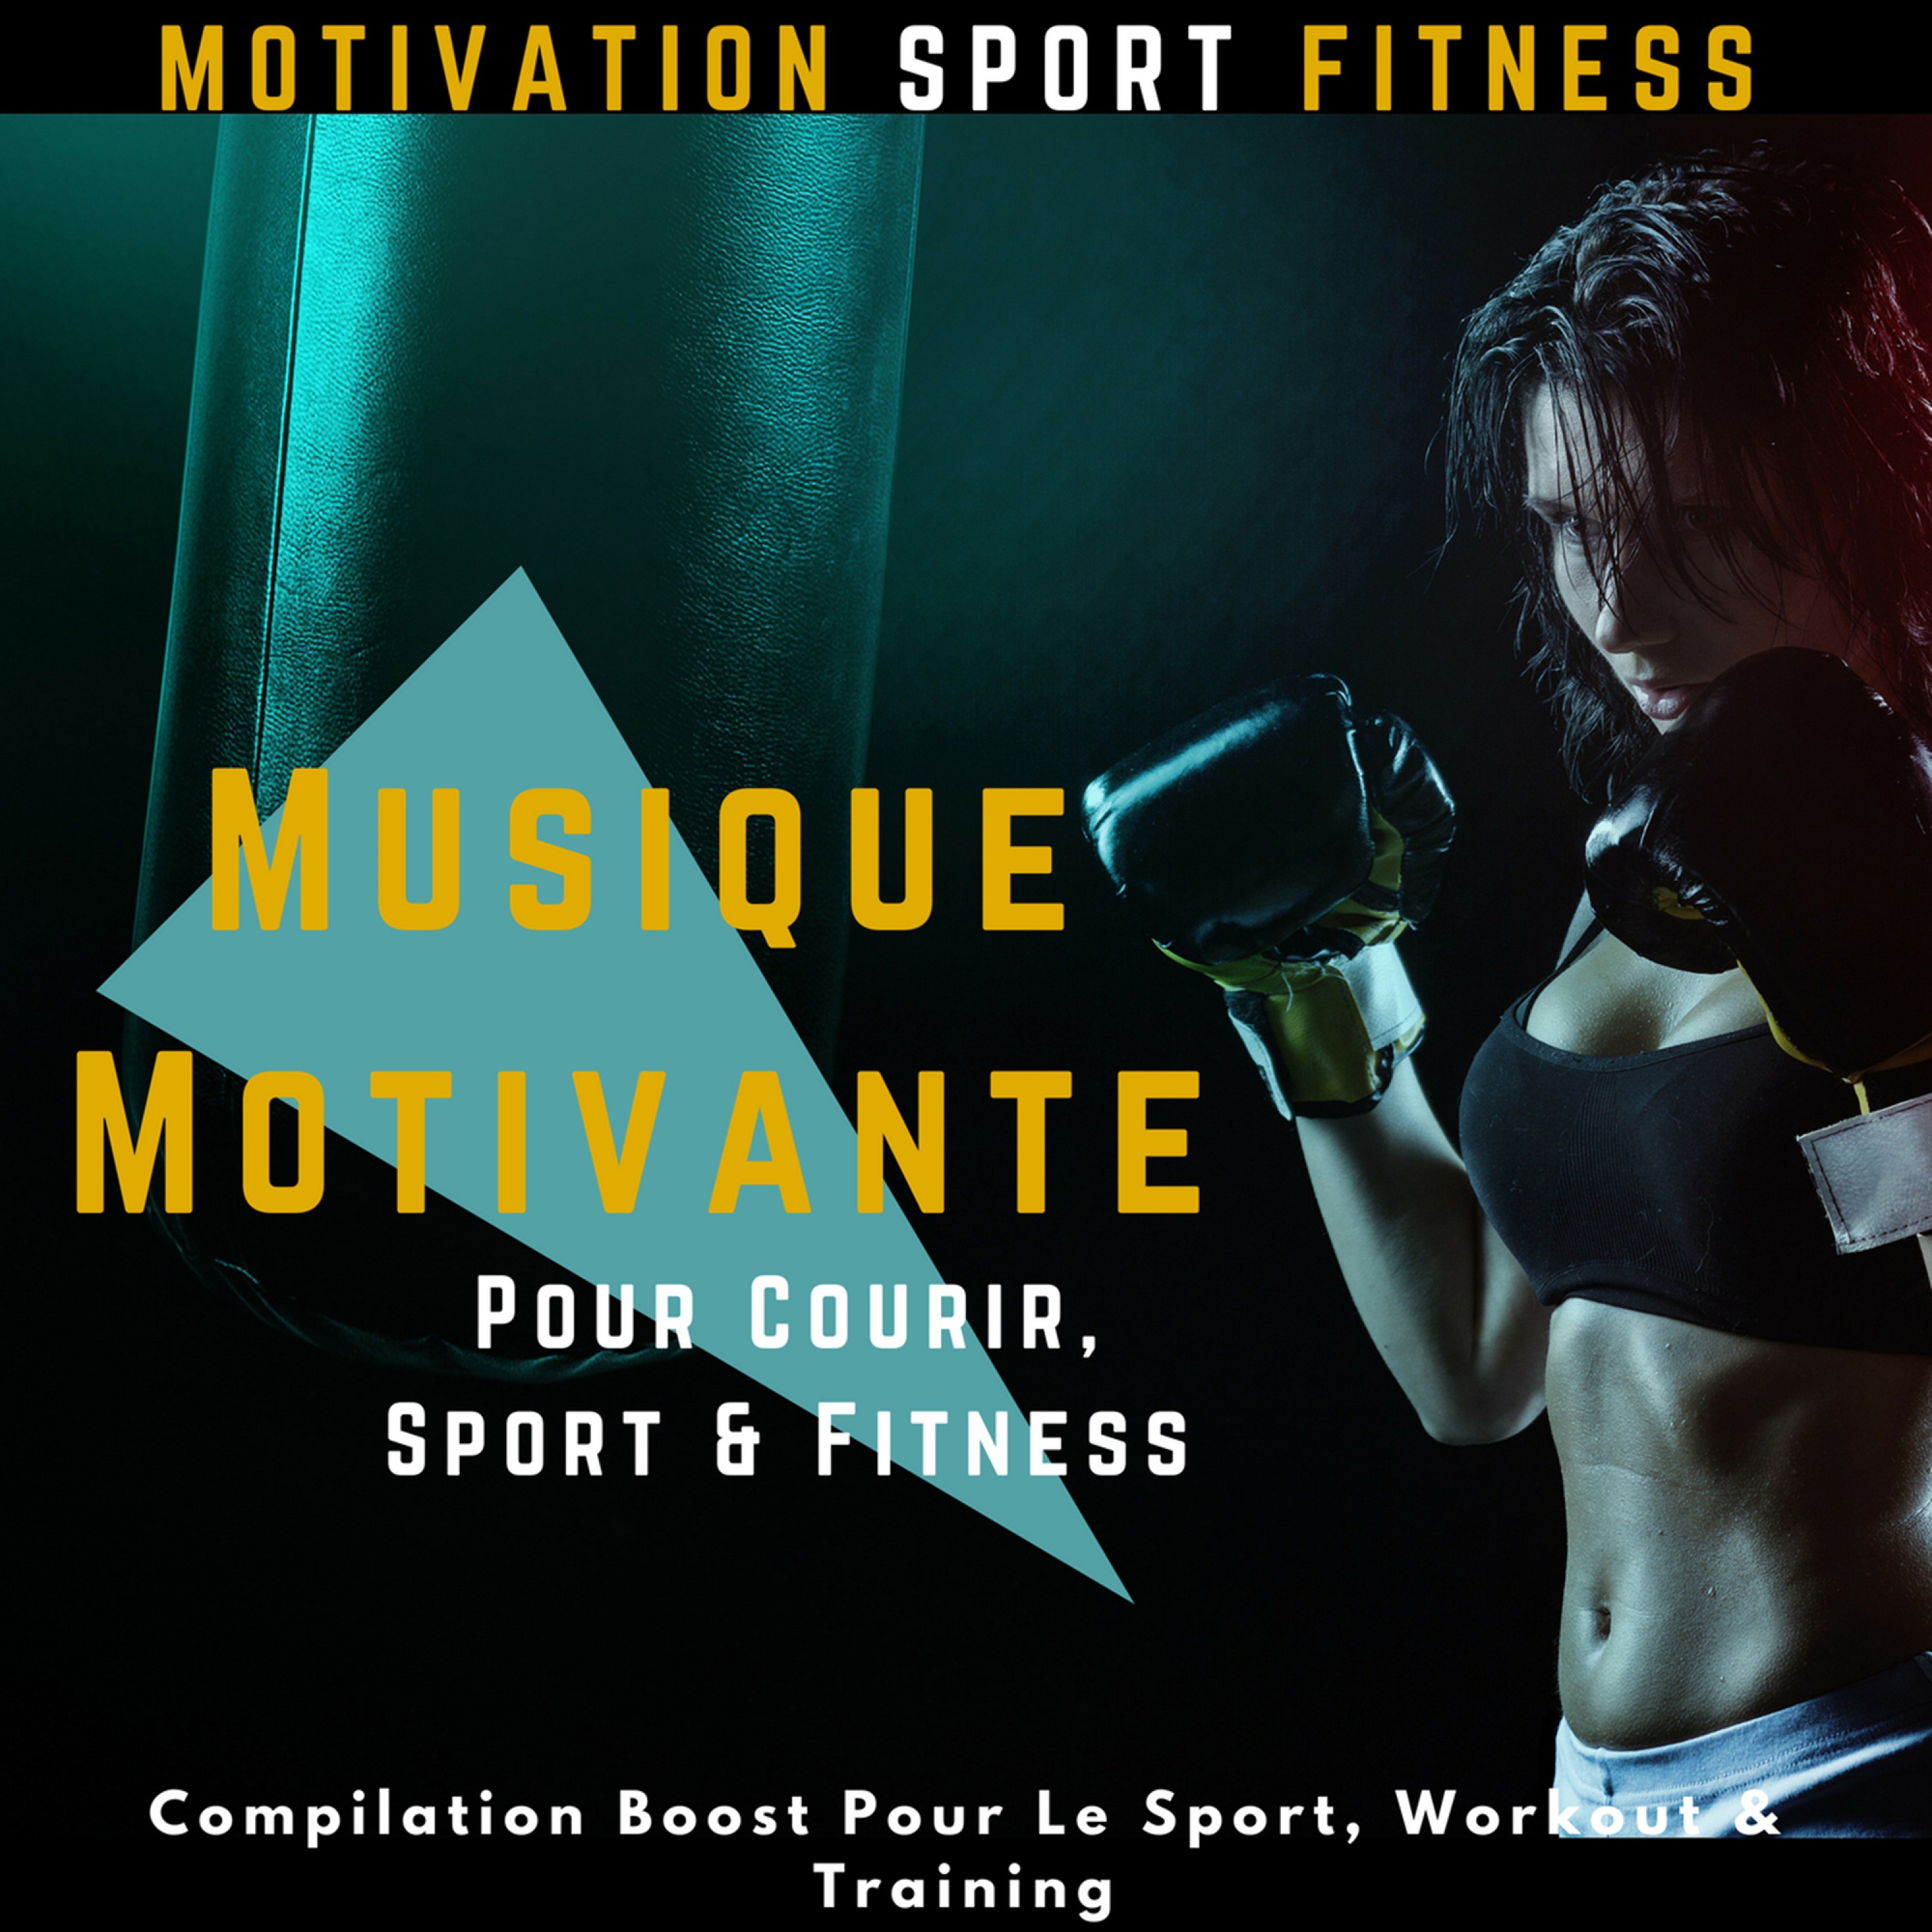 Musique Motivante Pour Courir, Sport & Fitness